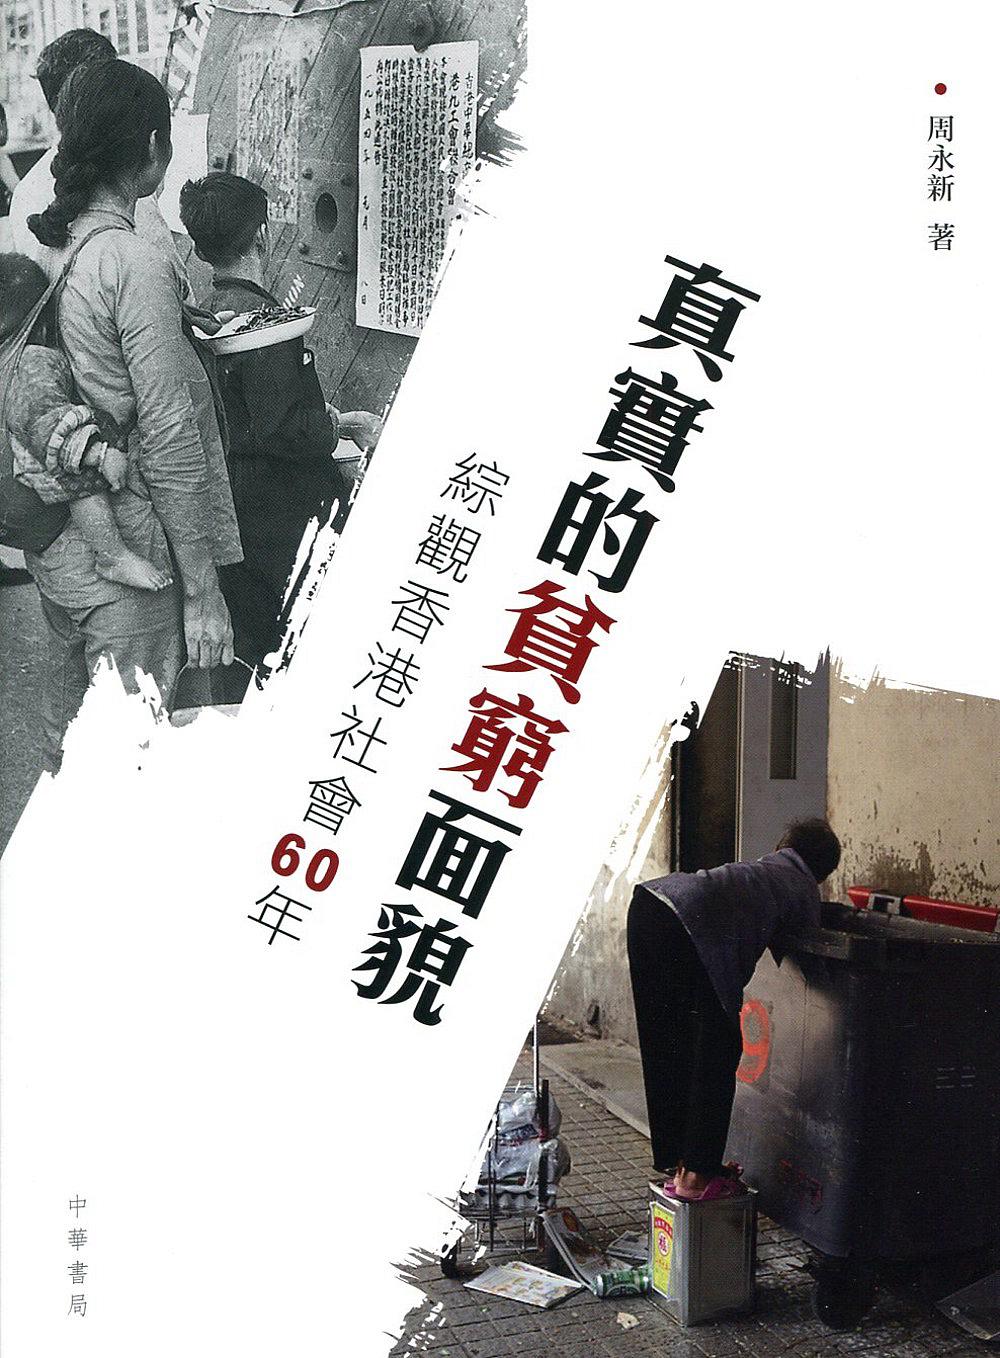 真實的貧窮面貌──綜觀香港社會60年